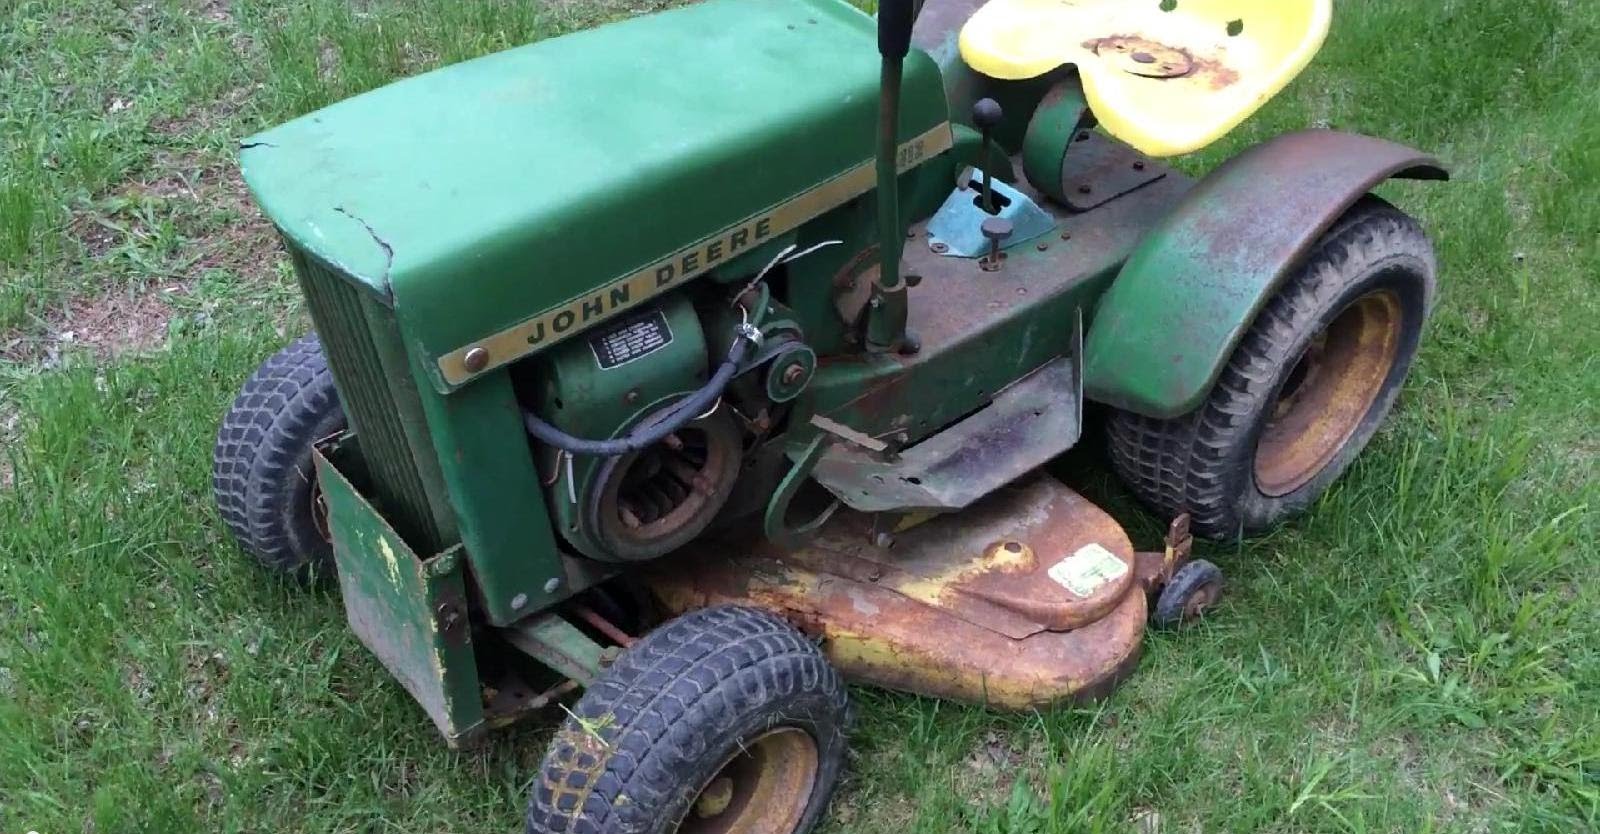 1967 John Deere 112 Round Fender Garden Tractor Found on ...